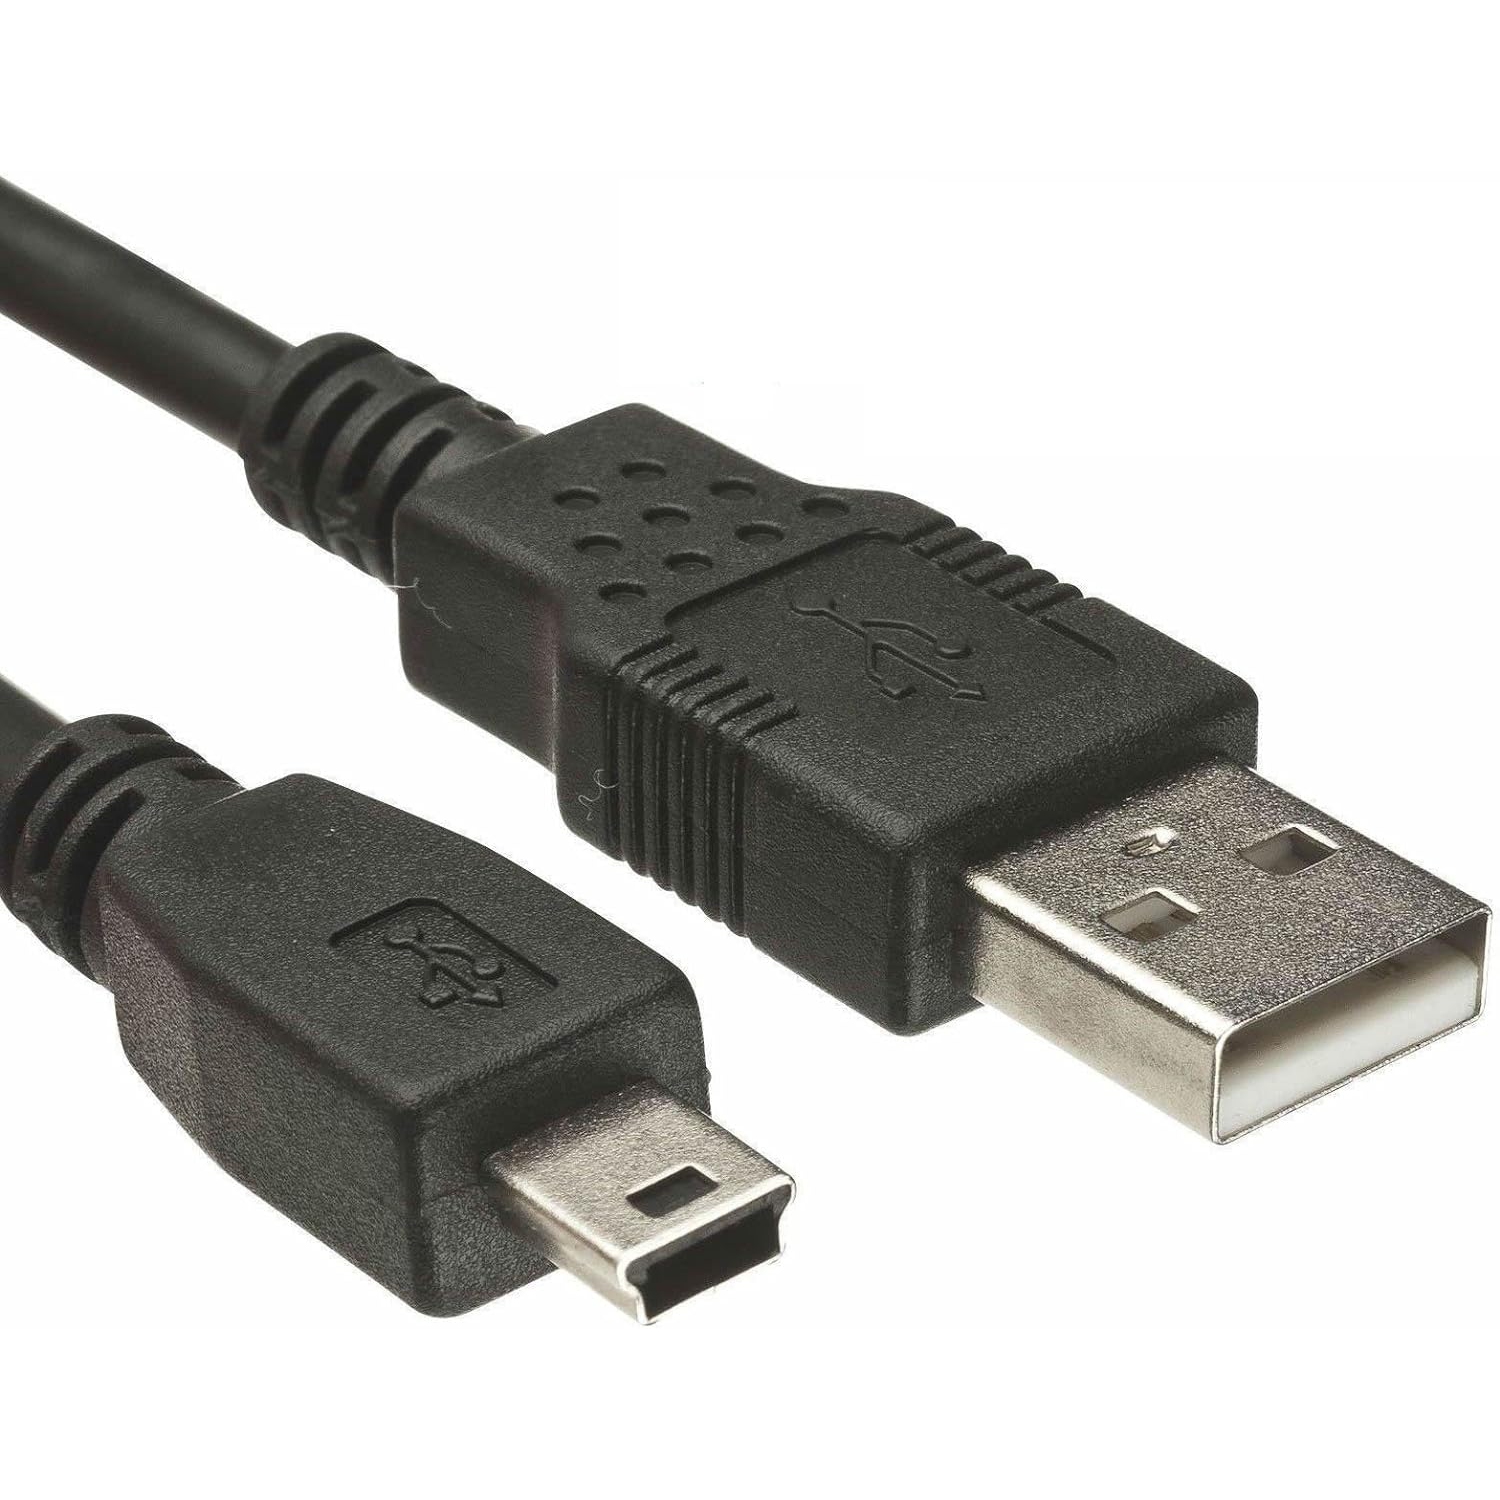 Power USB PC Computer Data Cable Cord for Nikon D100 D200 D300 D300S D3100 D7000 D700 UC-E4